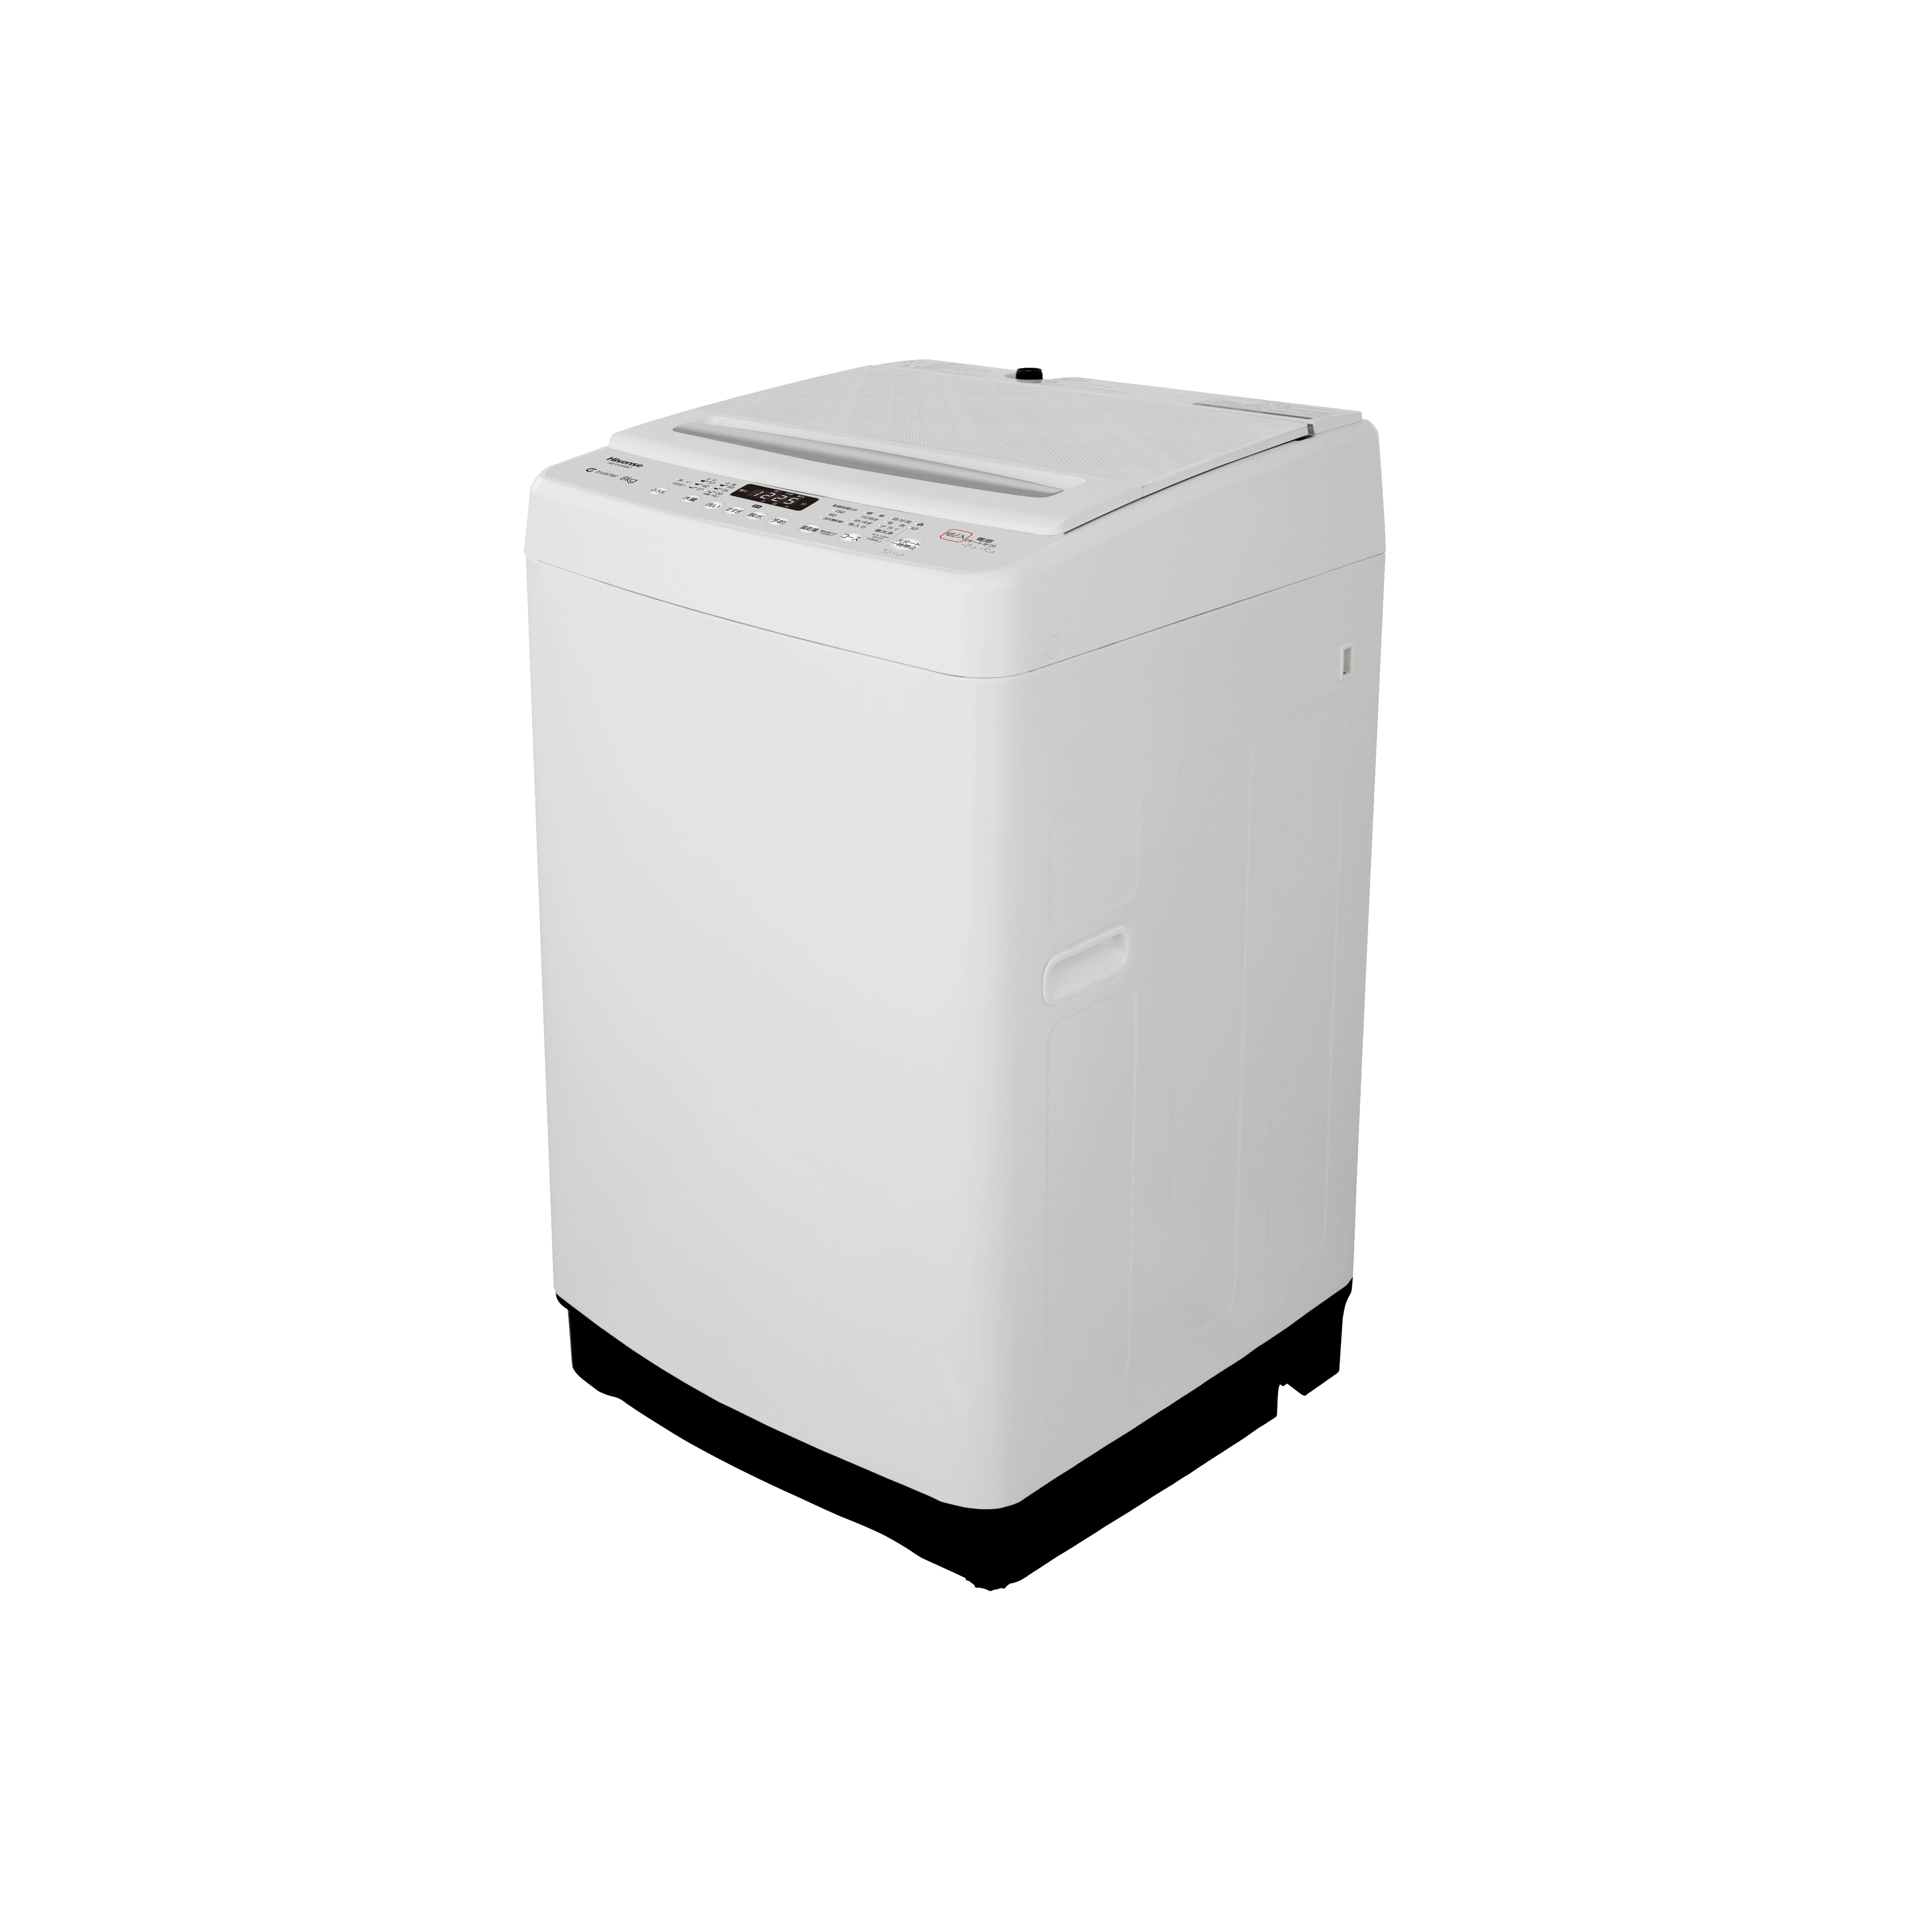 全自動洗濯機 HW-DG80BK1 [洗濯8.0kg 簡易乾燥(送風機能) mariamcmanus